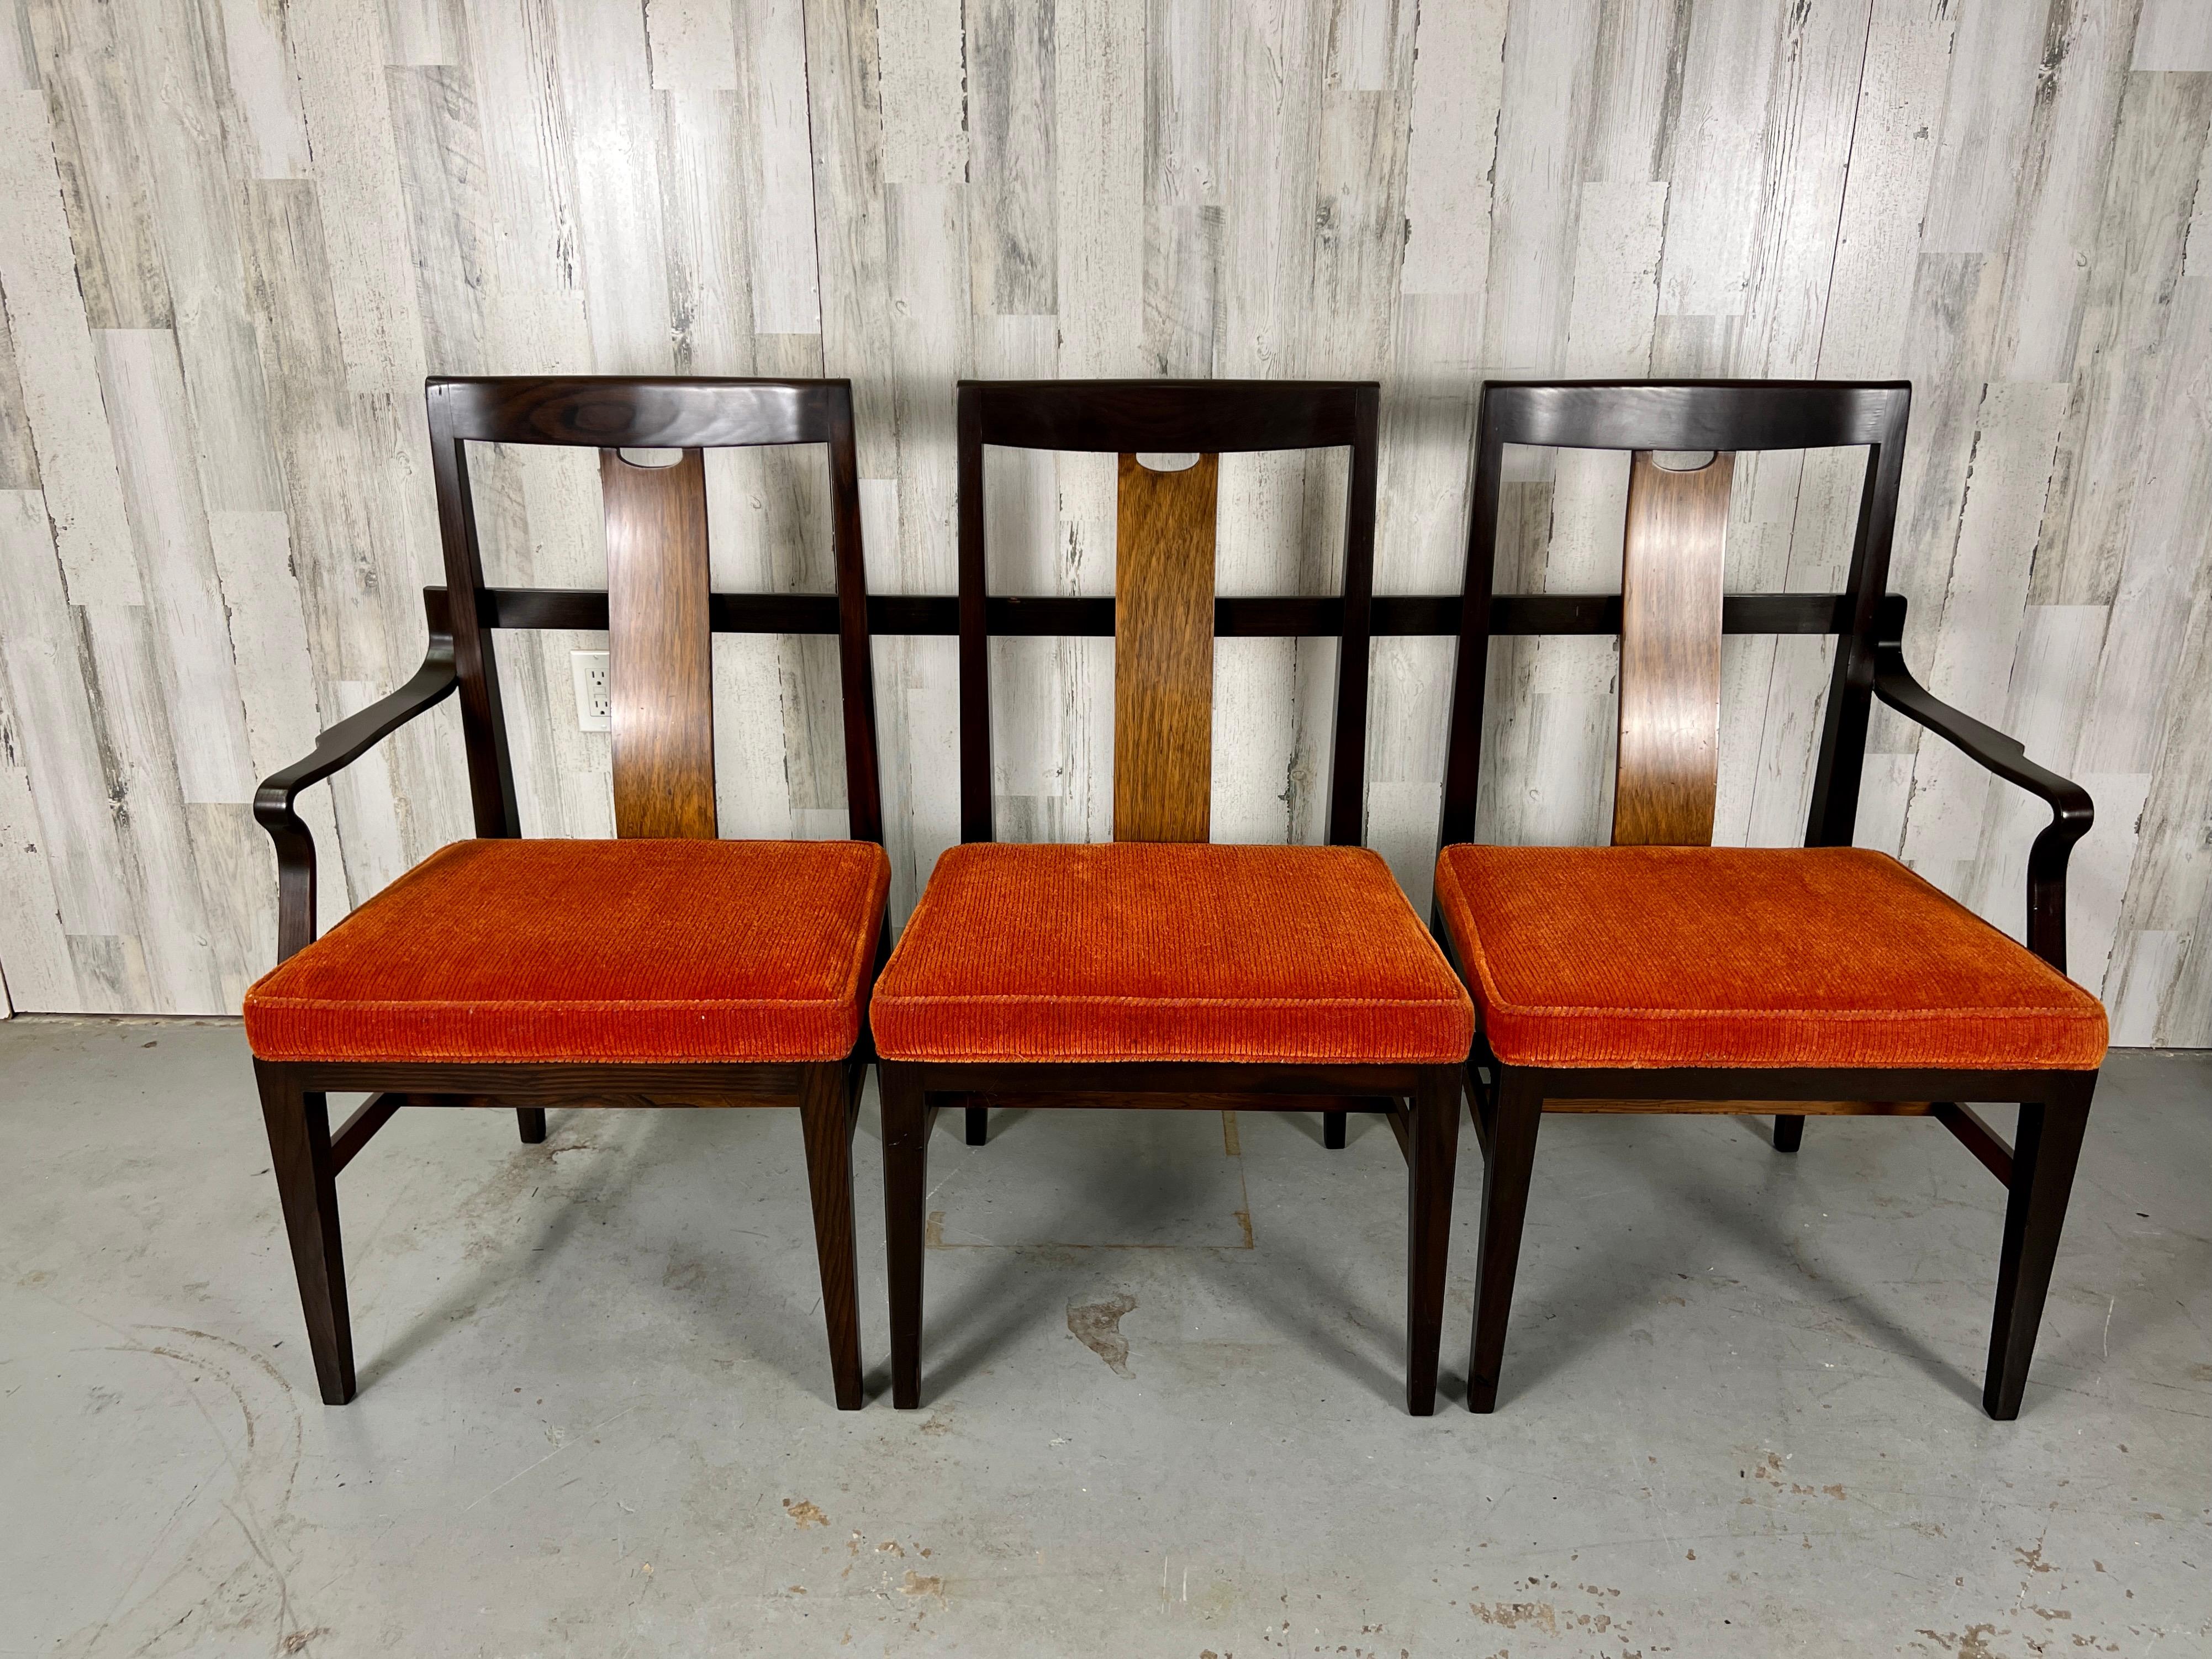 Cet assemblage de trois chaises en un canapé avec des accoudoirs en bois courbé a été commandé sur mesure par Stephens Financial pour ses bureaux dans le Michigan. Une nouvelle sellerie peut être souhaitée.